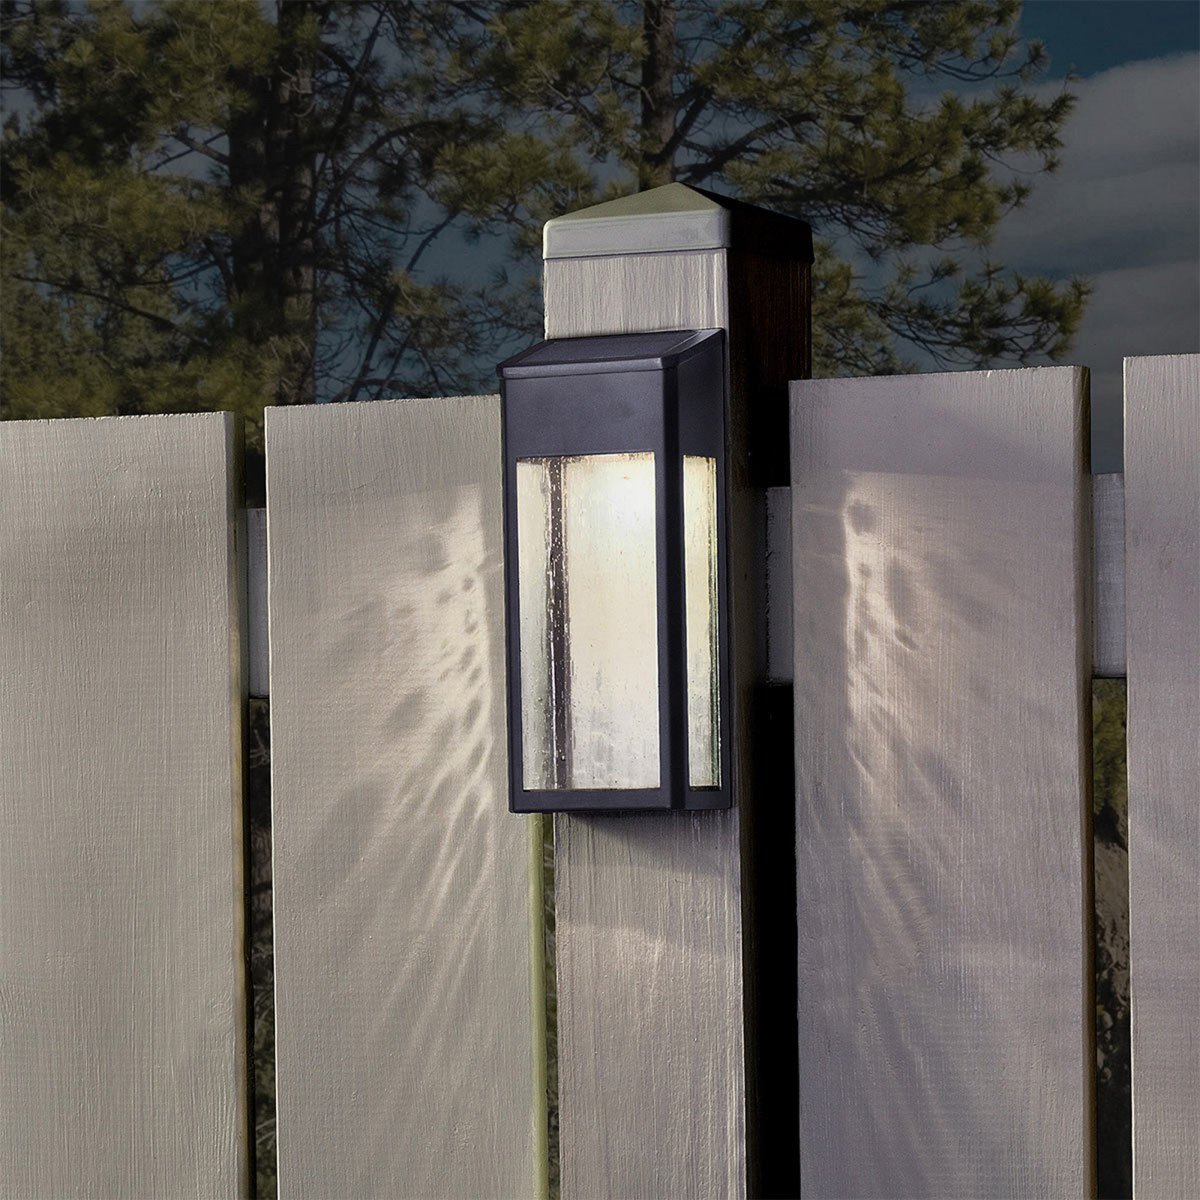 Stimmungs-Beleuchtung im Freien - LED Solar Wandlampe - solarbetriebene Außenlampe